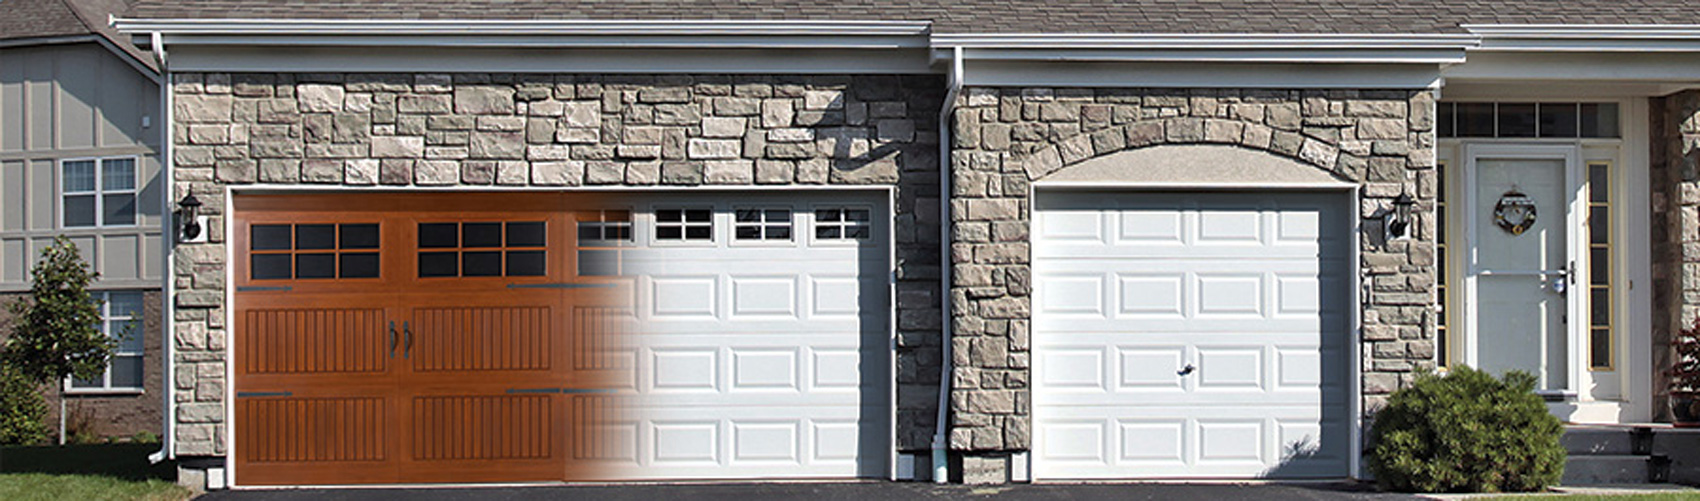 Overhead Garage Doors Vs Other Options